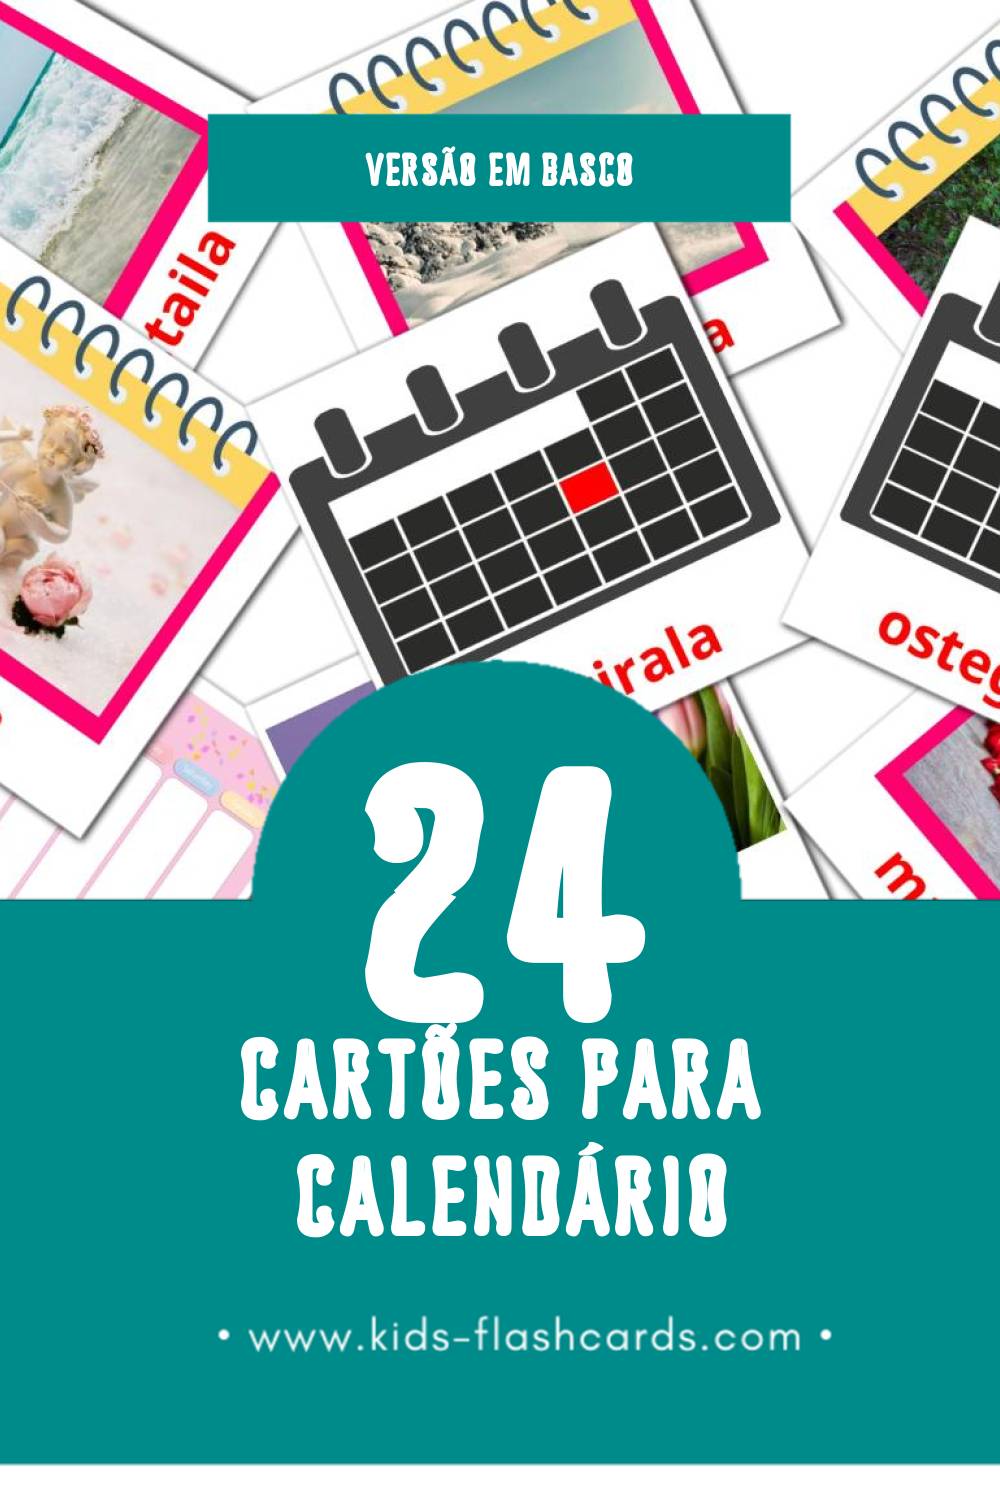 Flashcards de Egutegia Visuais para Toddlers (24 cartões em Basco)